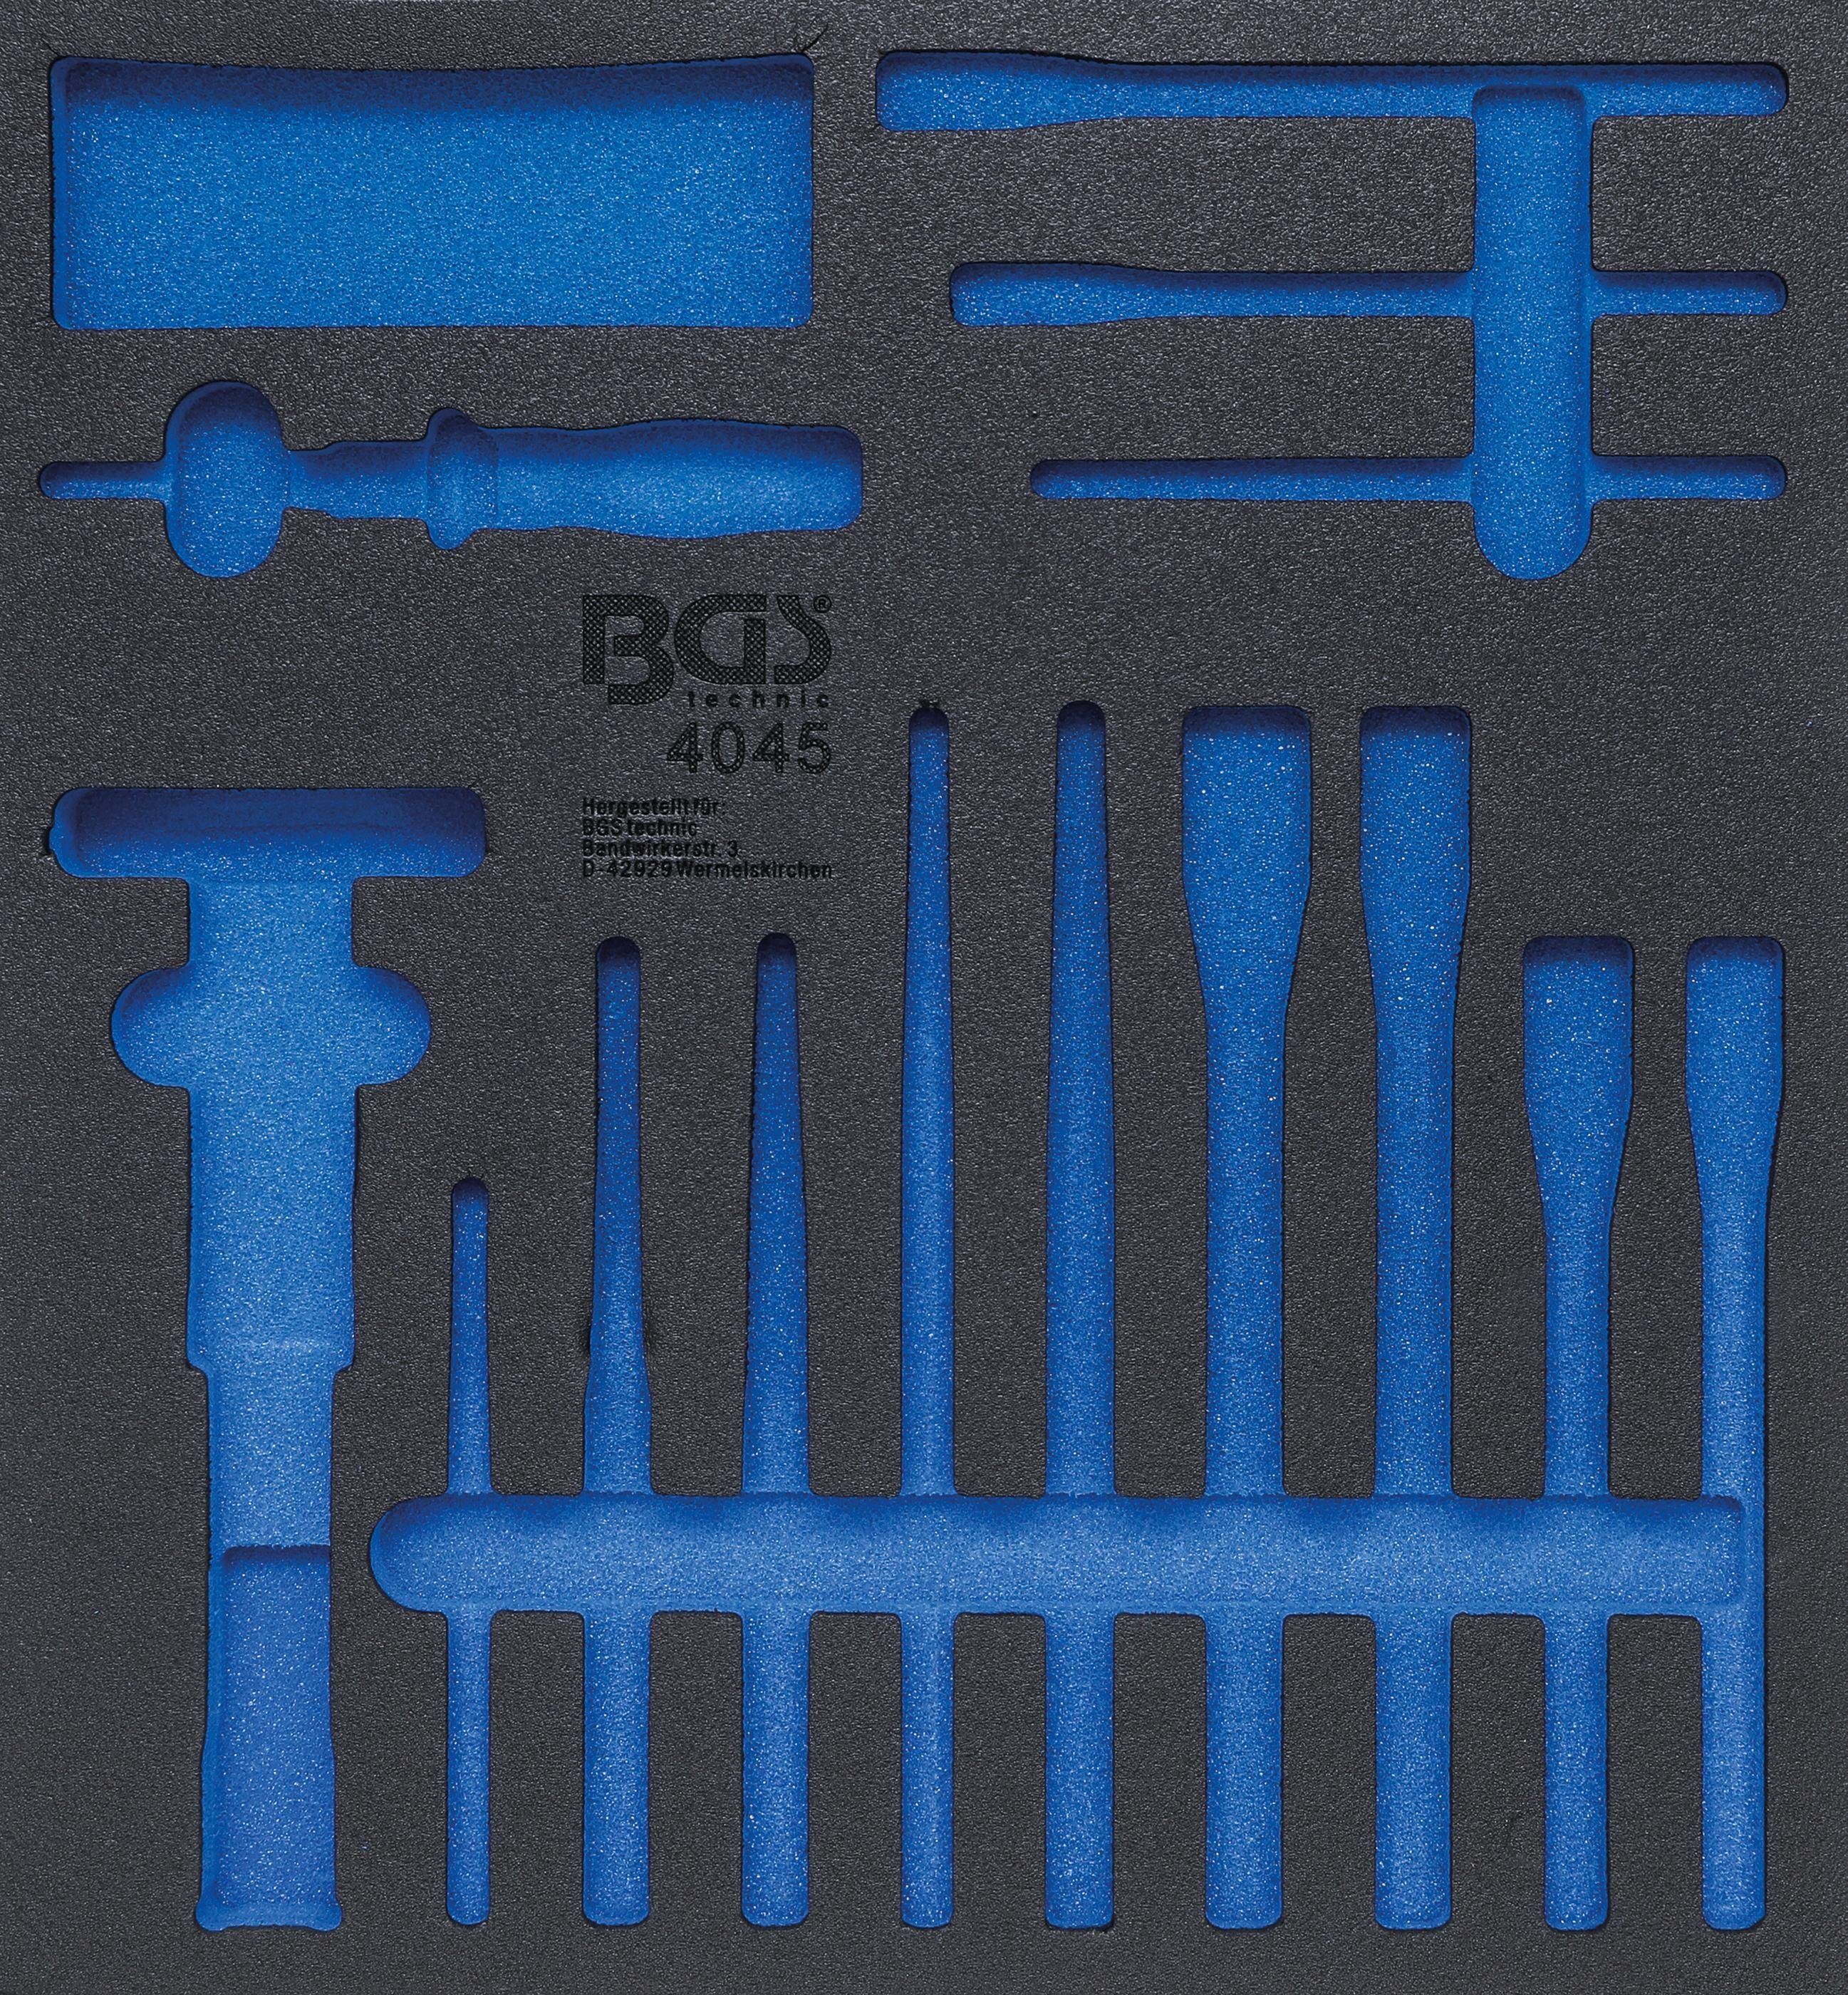 BGS technic Werkstattwagen Werkstattwageneinlage 2/3, leer, für Art. 4045